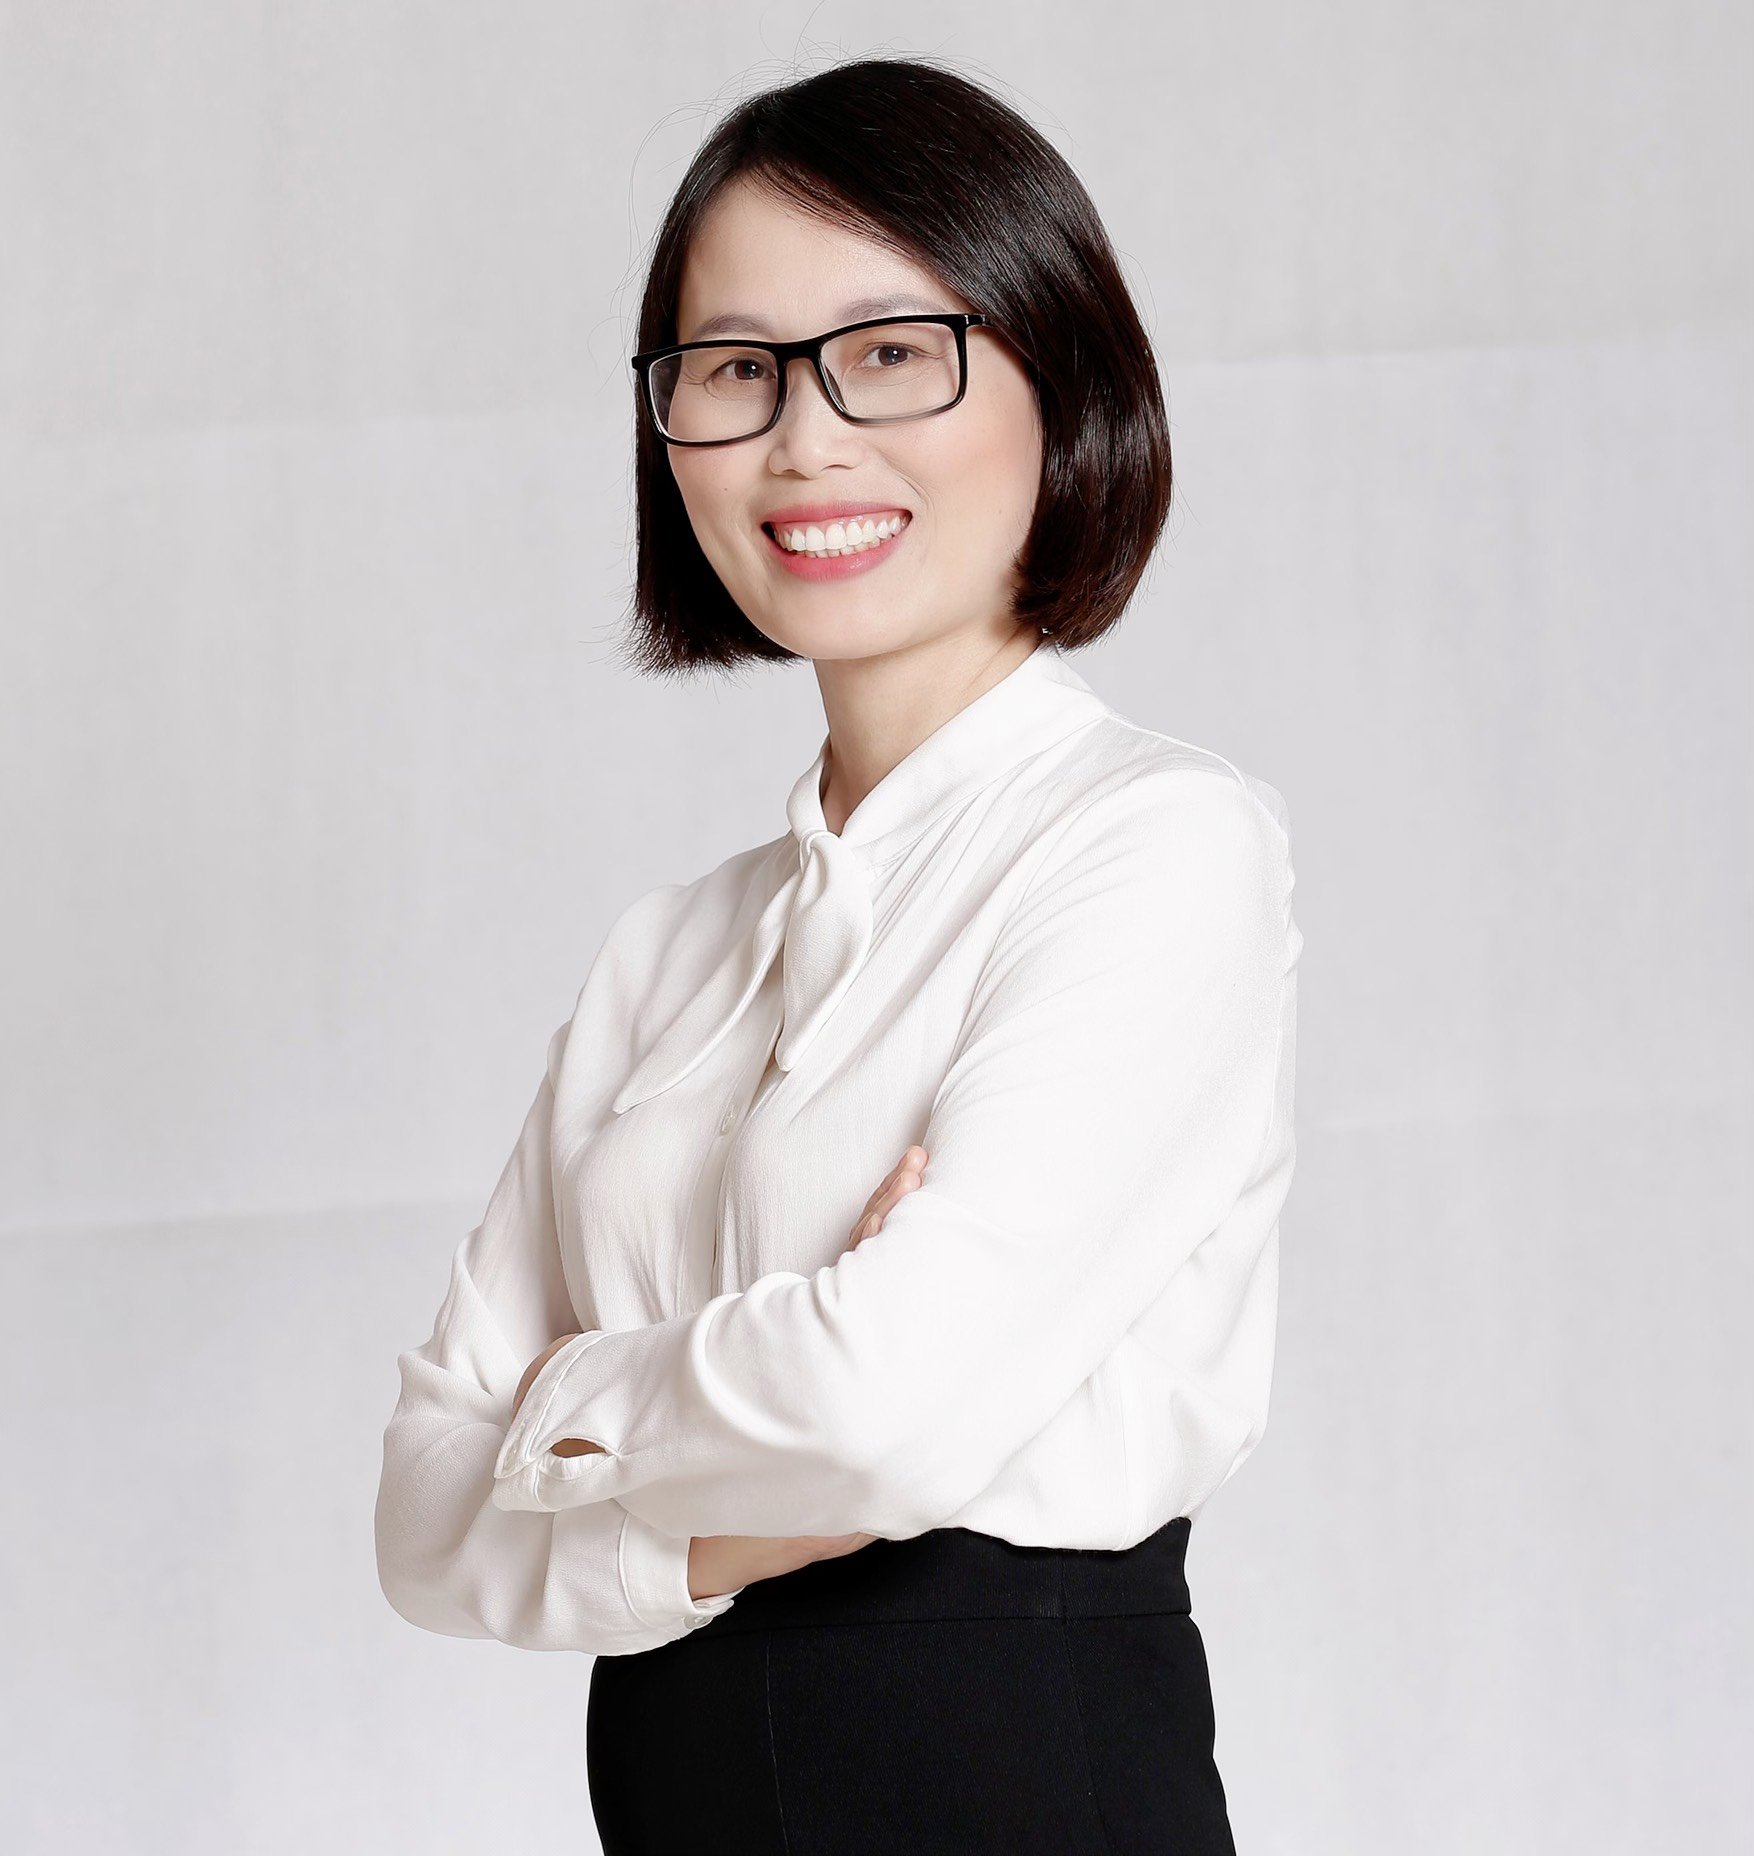 Bà Phùng Thị Luyến- Founder của HR Trainning